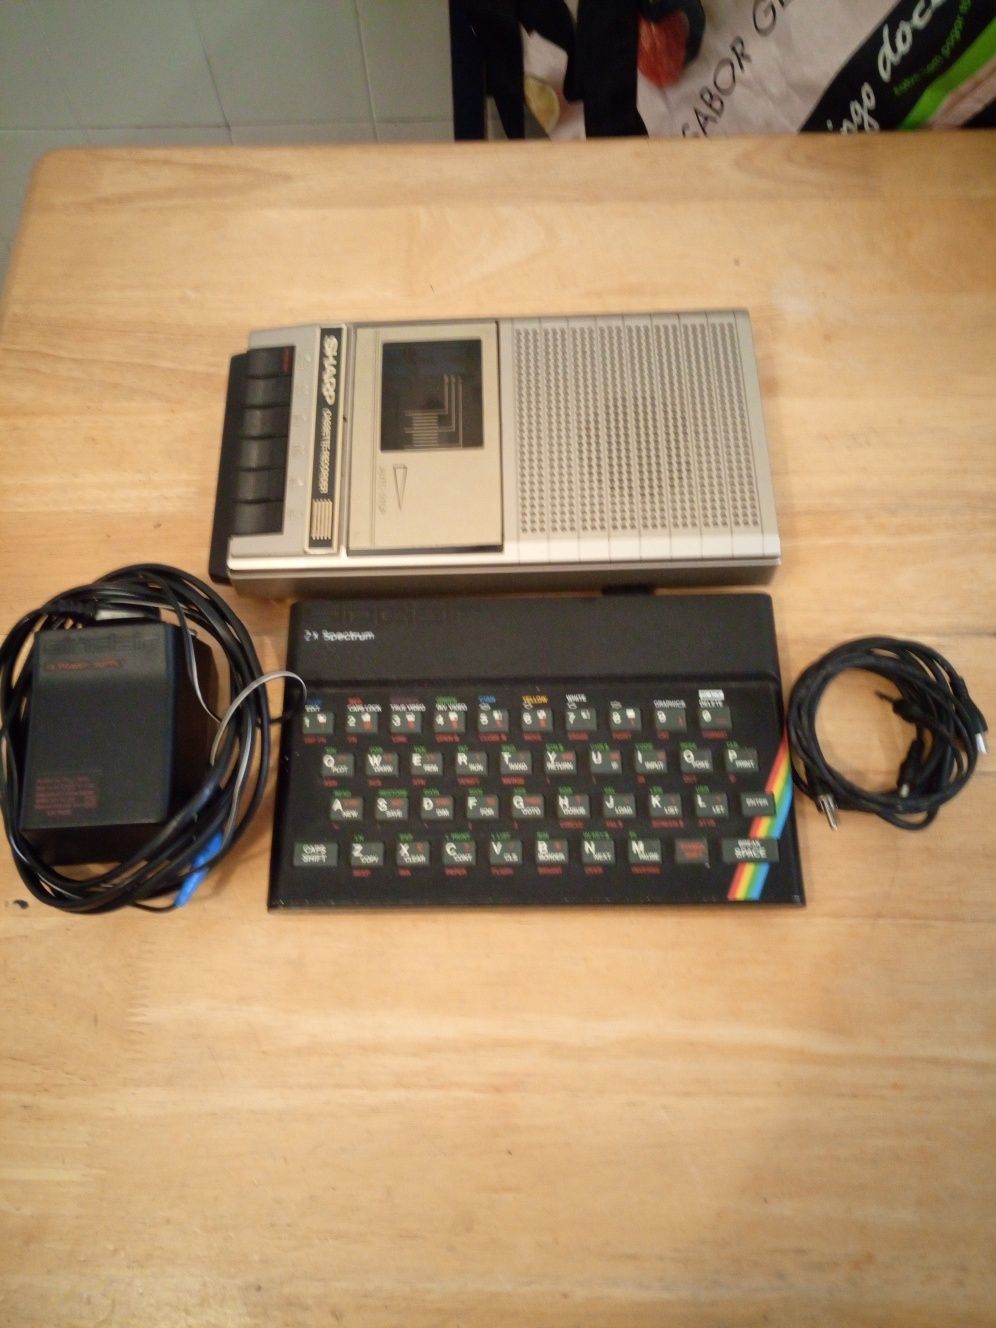 Zx Spectrum 48K + gravador